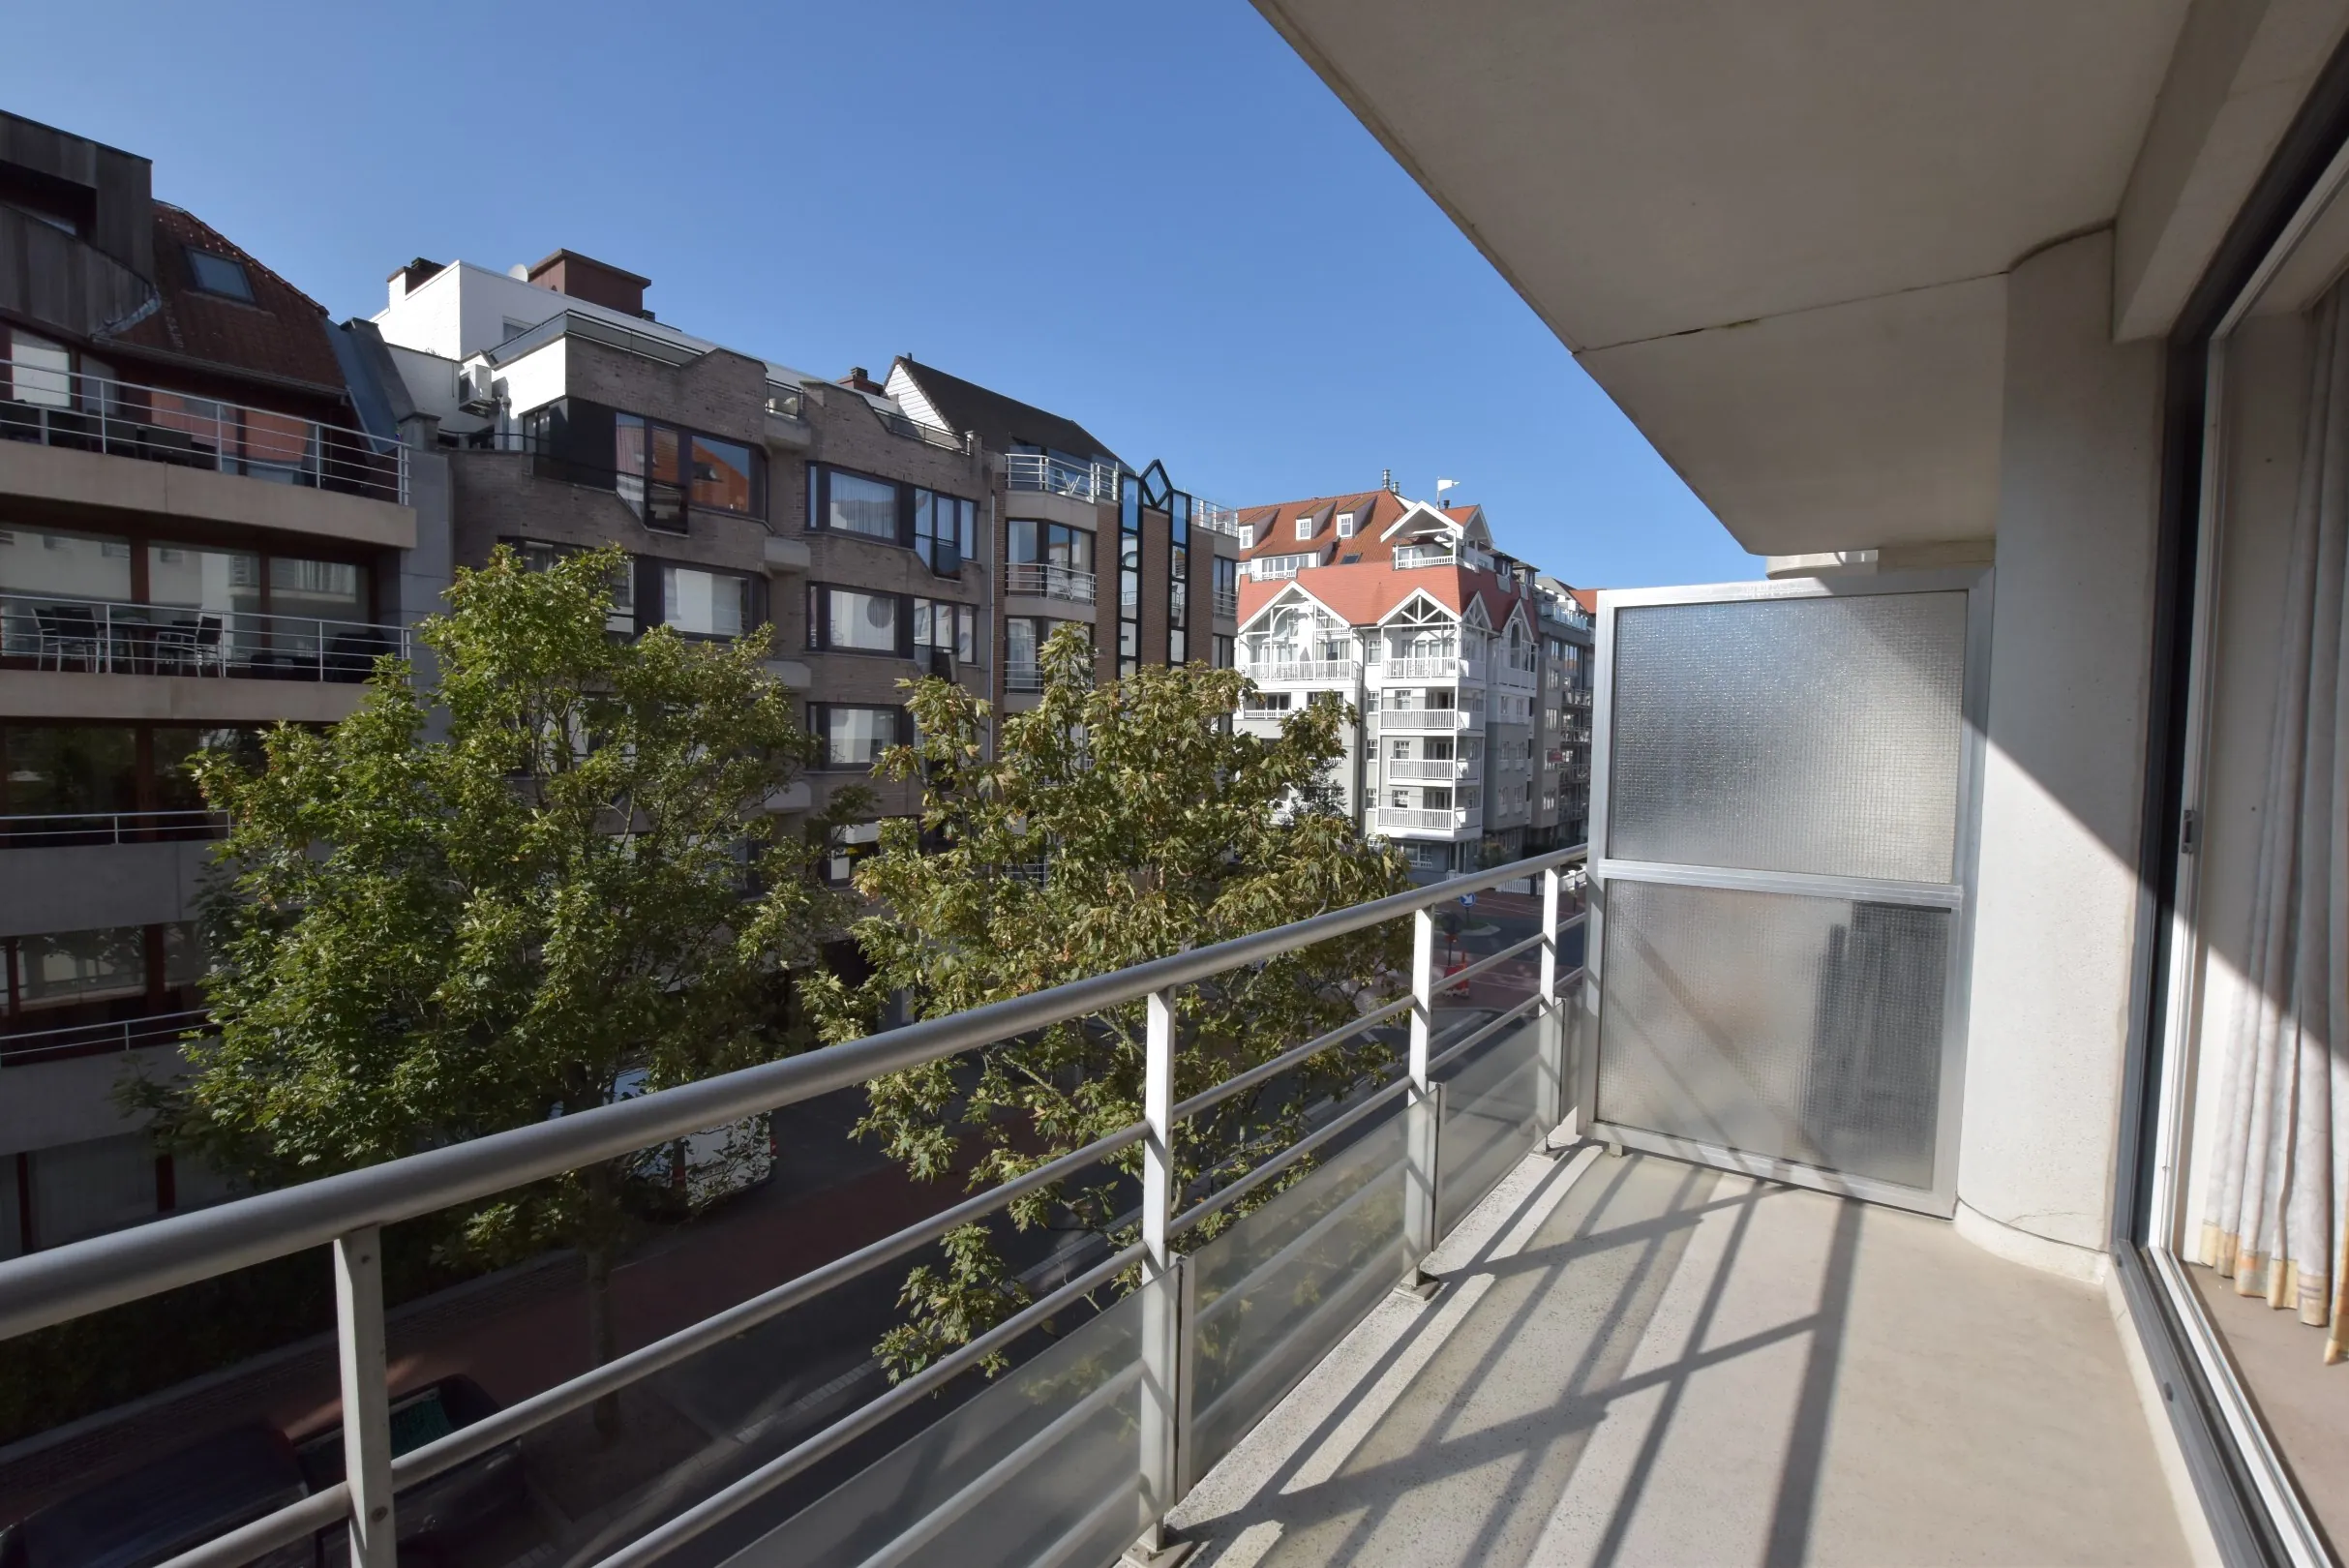 Appartement de 2 chambres à rénover avec une belle terrasse orientée ouest, situé près de la Lippenslaan à Knokke.